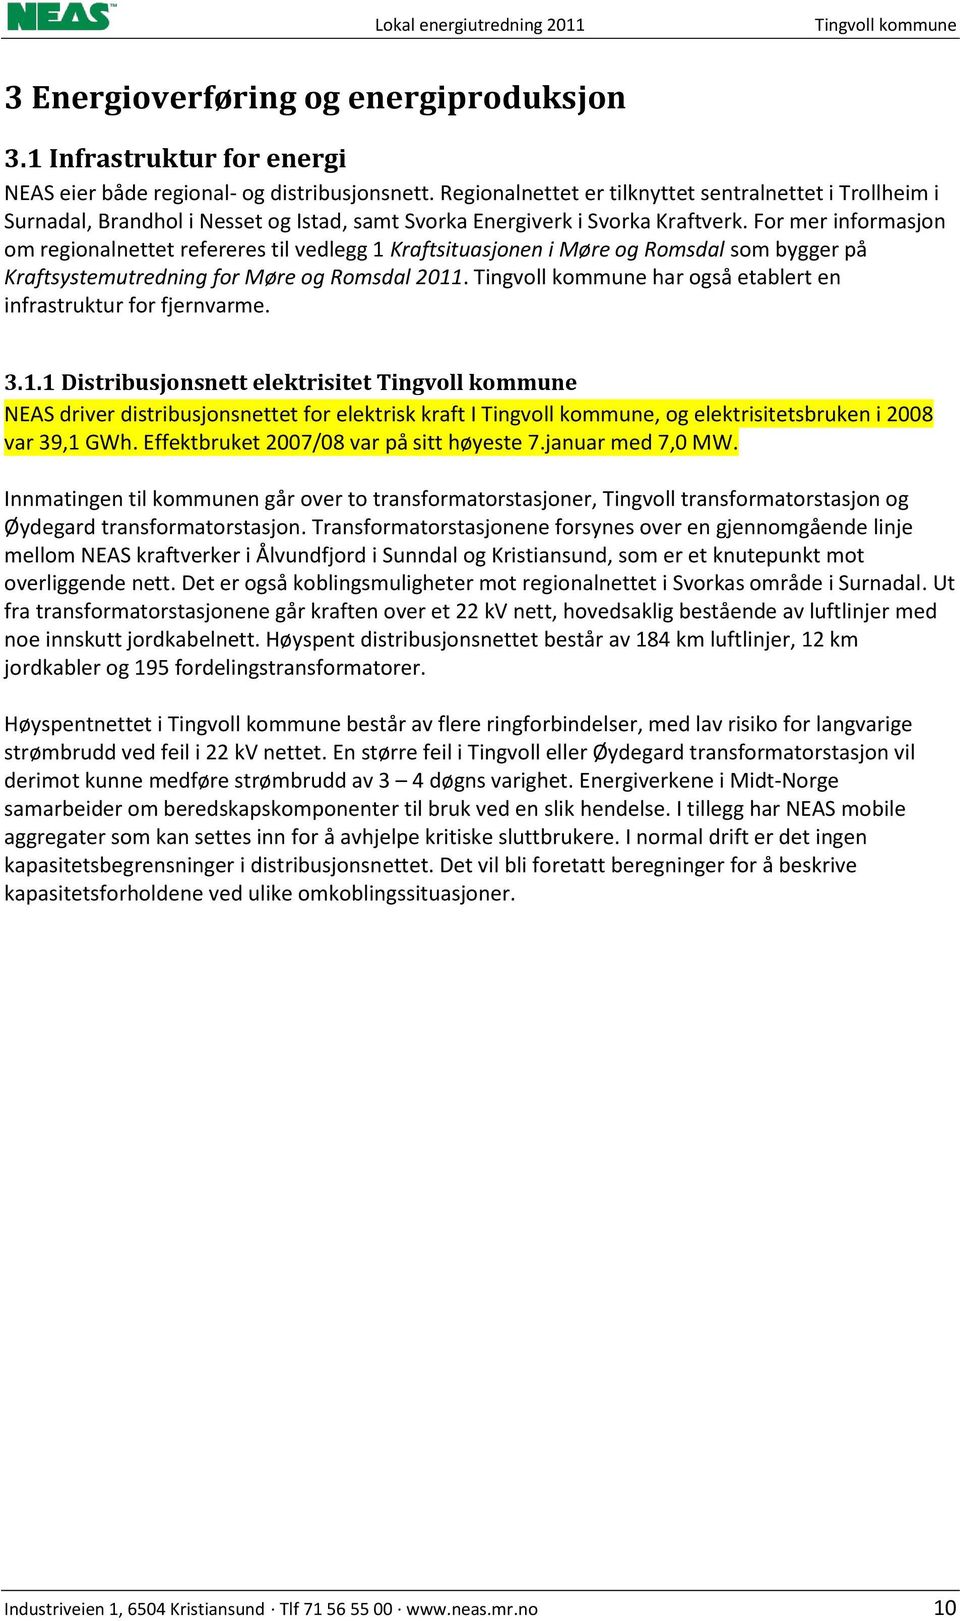 For mer informasjon om regionalnettet refereres til vedlegg 1 Kraftsituasjonen i Møre og Romsdal som bygger på Kraftsystemutredning for Møre og Romsdal 2011.